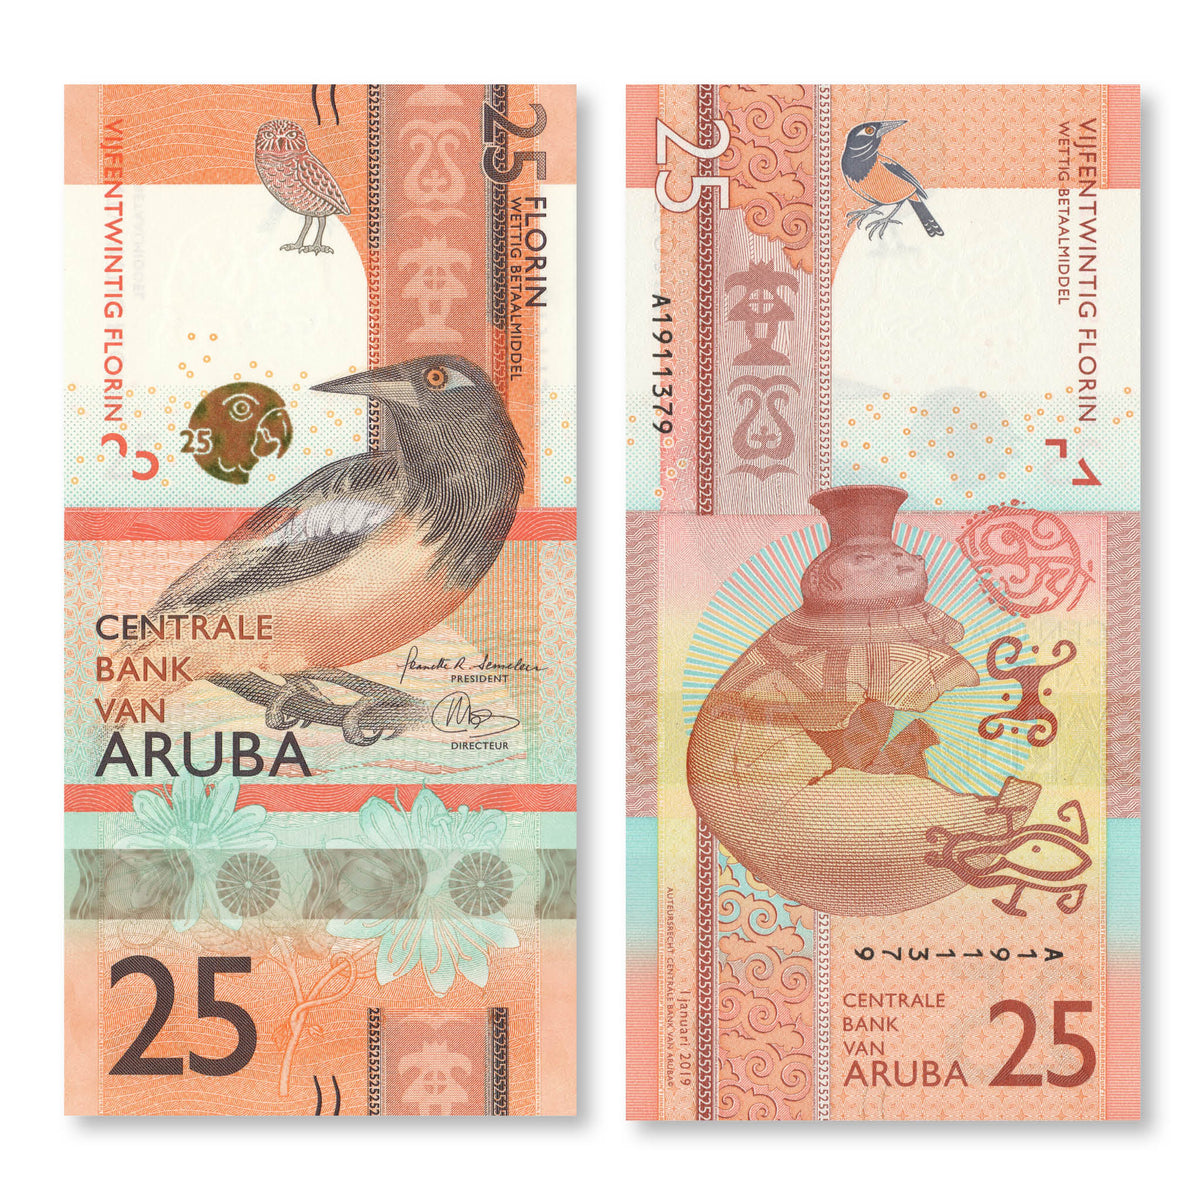 Aruba 25 Florin, 2019, B122a, UNC - Robert's World Money - World Banknotes